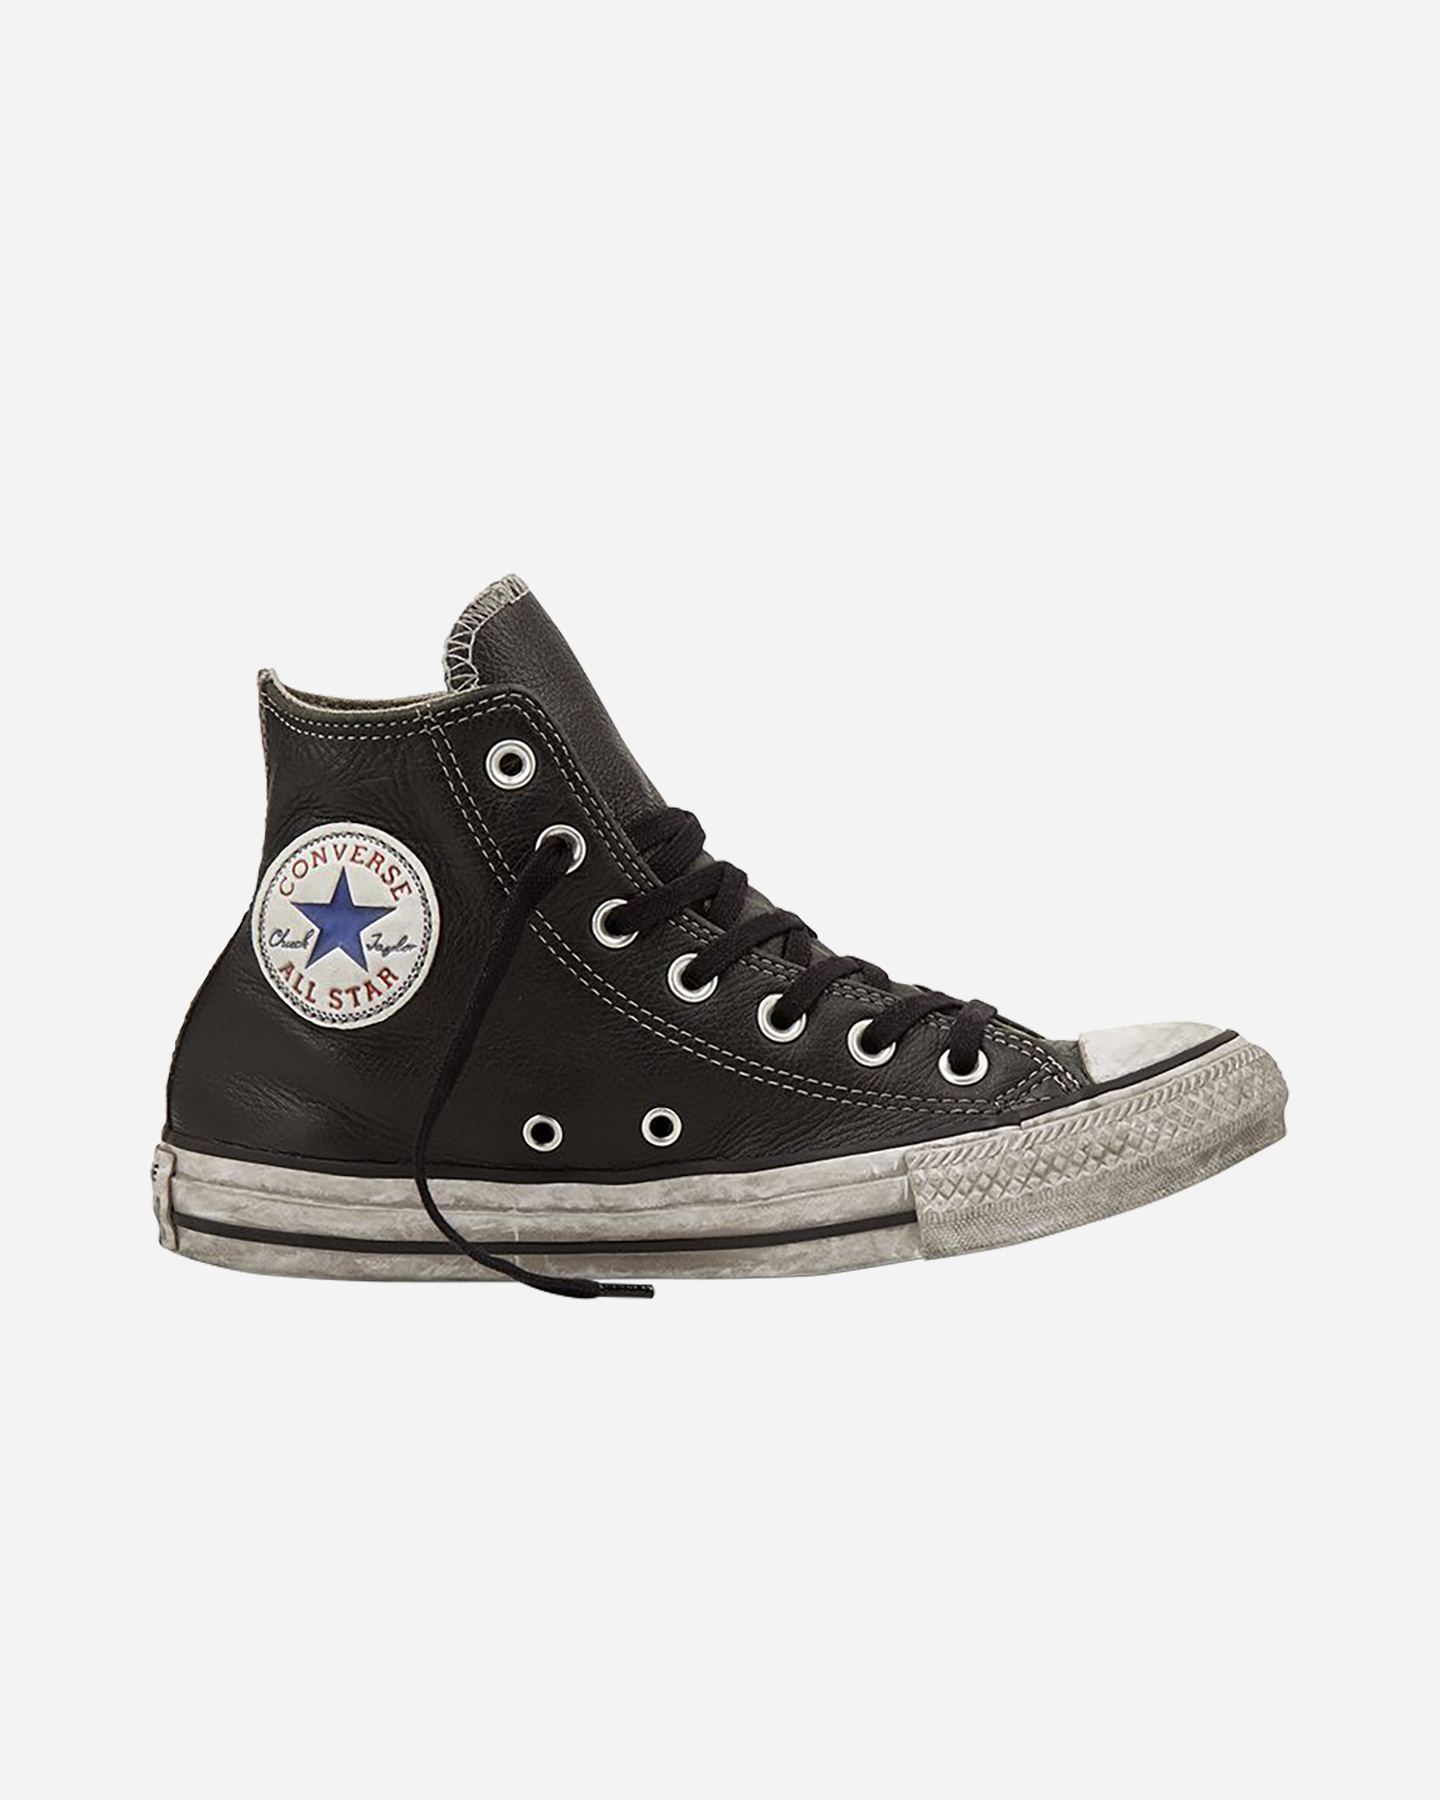 converse chuck taylor all star vintage hi m - scarpe sneakers - uomo